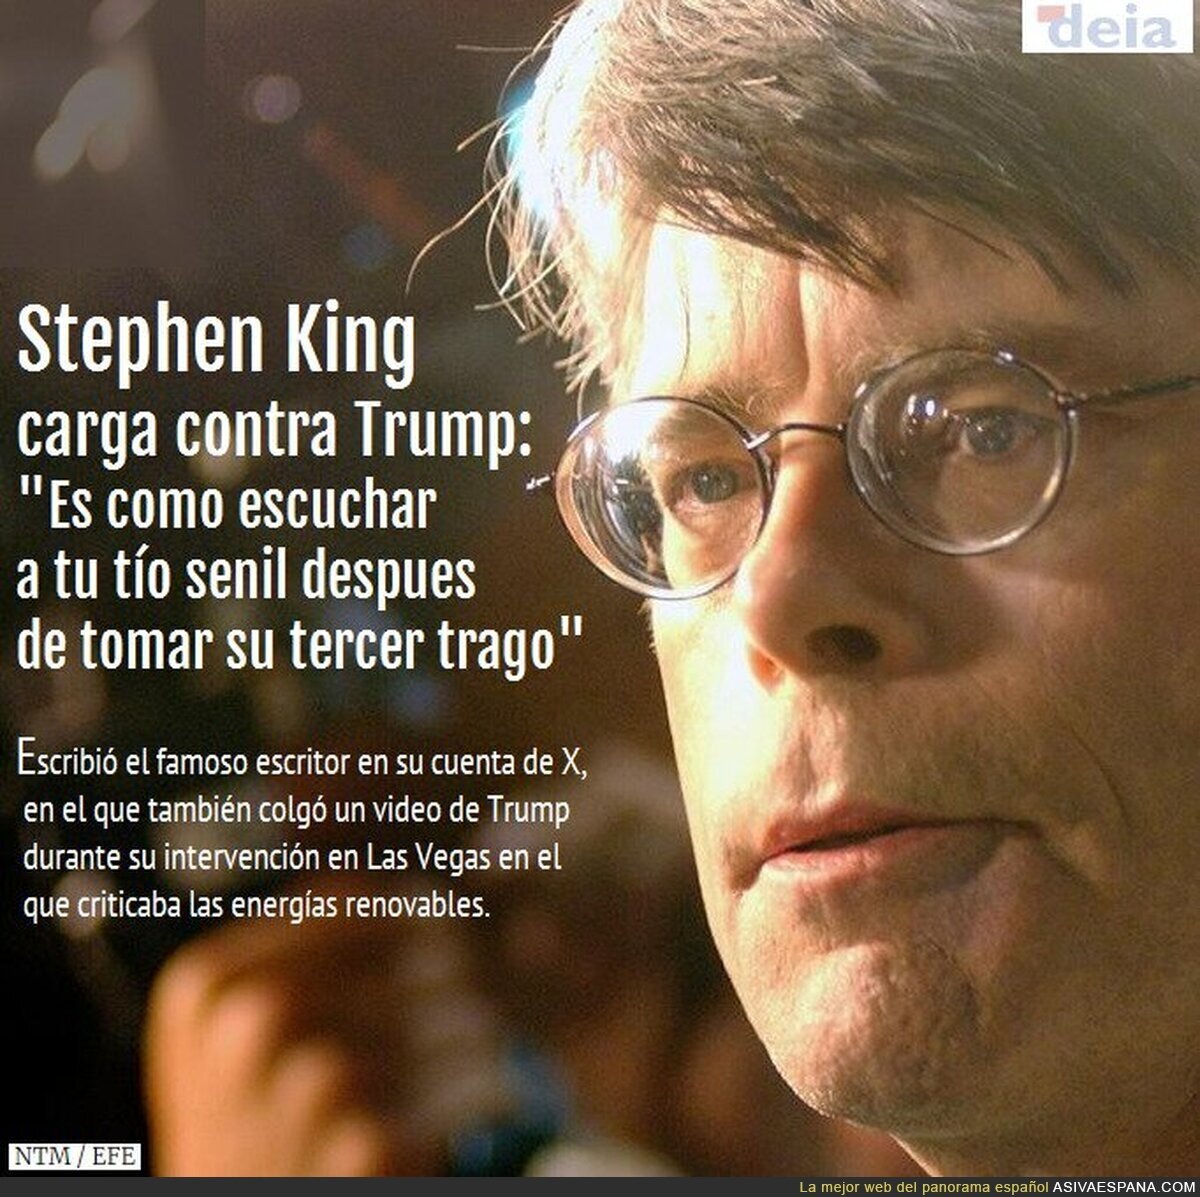 Lo dice Stephen King, máxima autoridad en psicópatas criminales